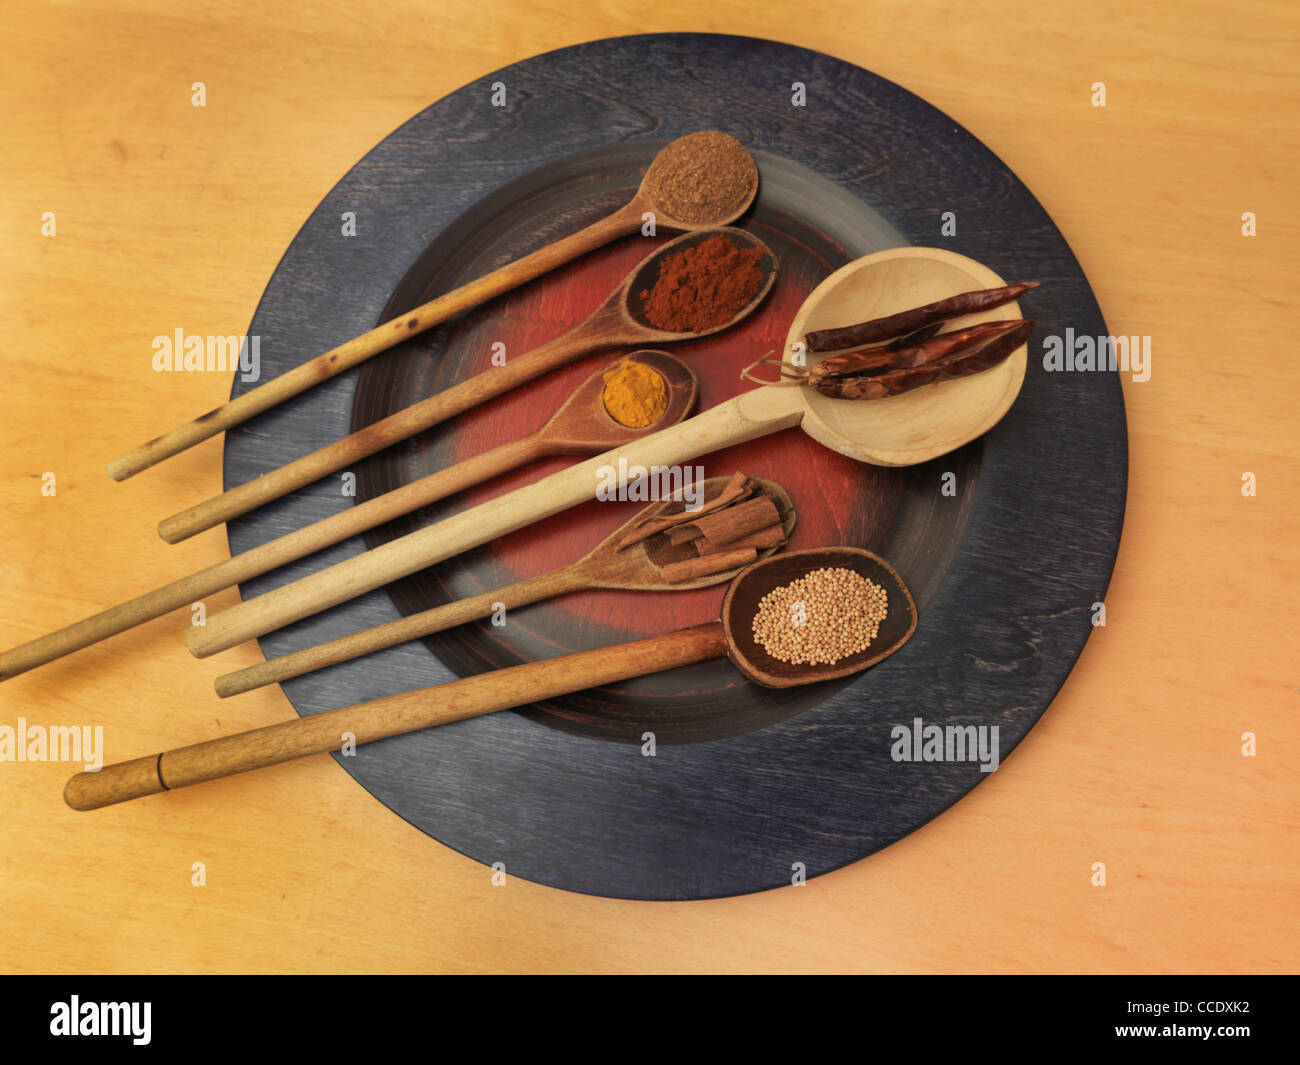 Collection d'épices sur des cuillères en bois sur une plaque Caram Masala, Paprika fumé, le curcuma, le piment, la cannelle et les graines de moutarde Banque D'Images